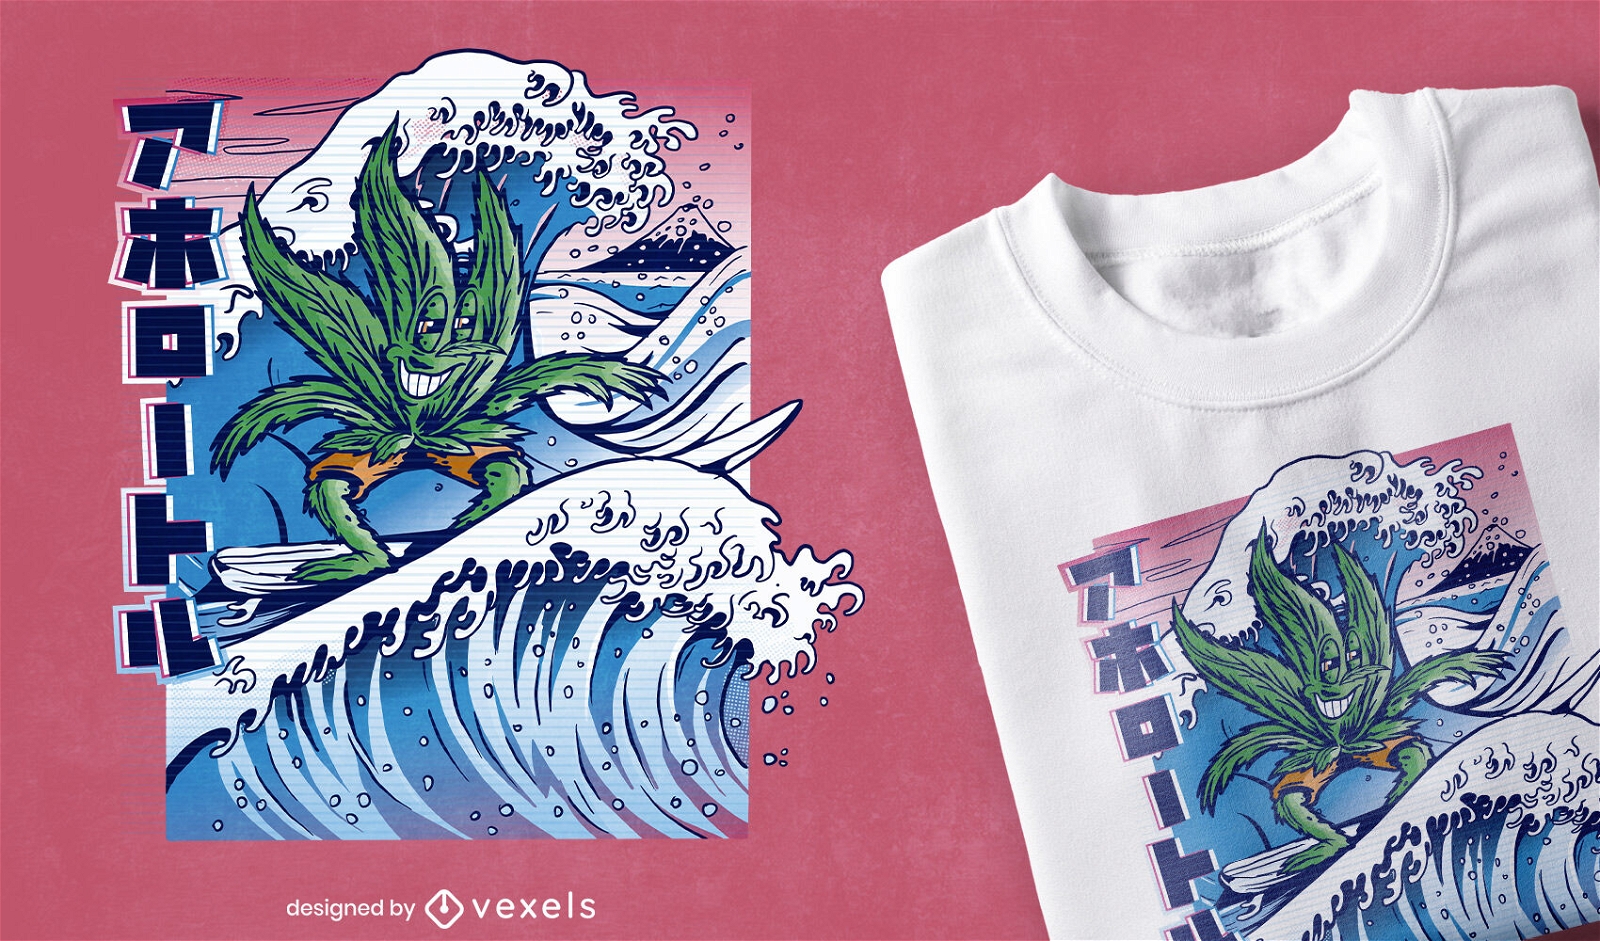 Dise?o de camiseta de surf de hojas de marihuana.